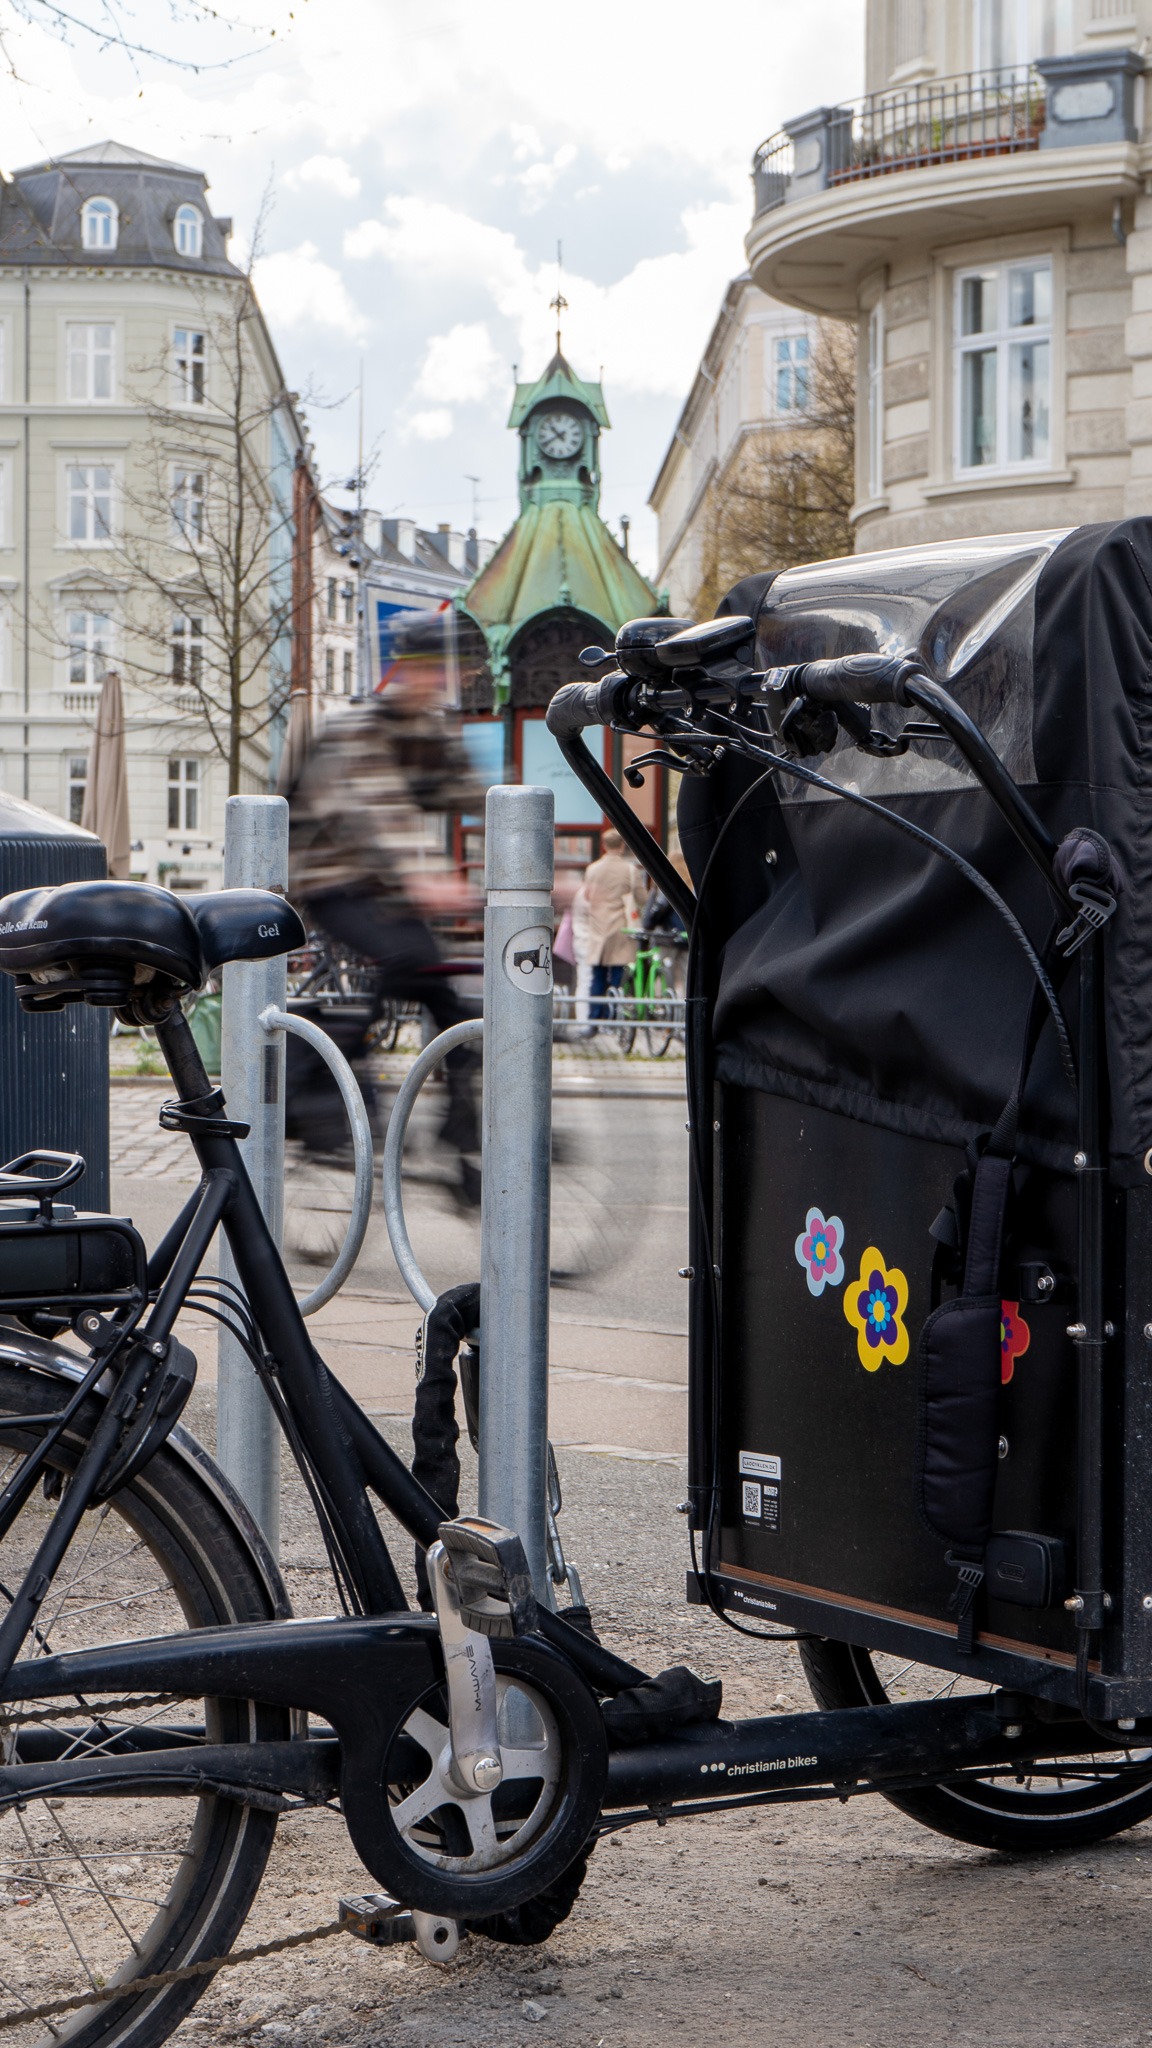 Първите паркинги за велосипеди се появяват в Копенхаген